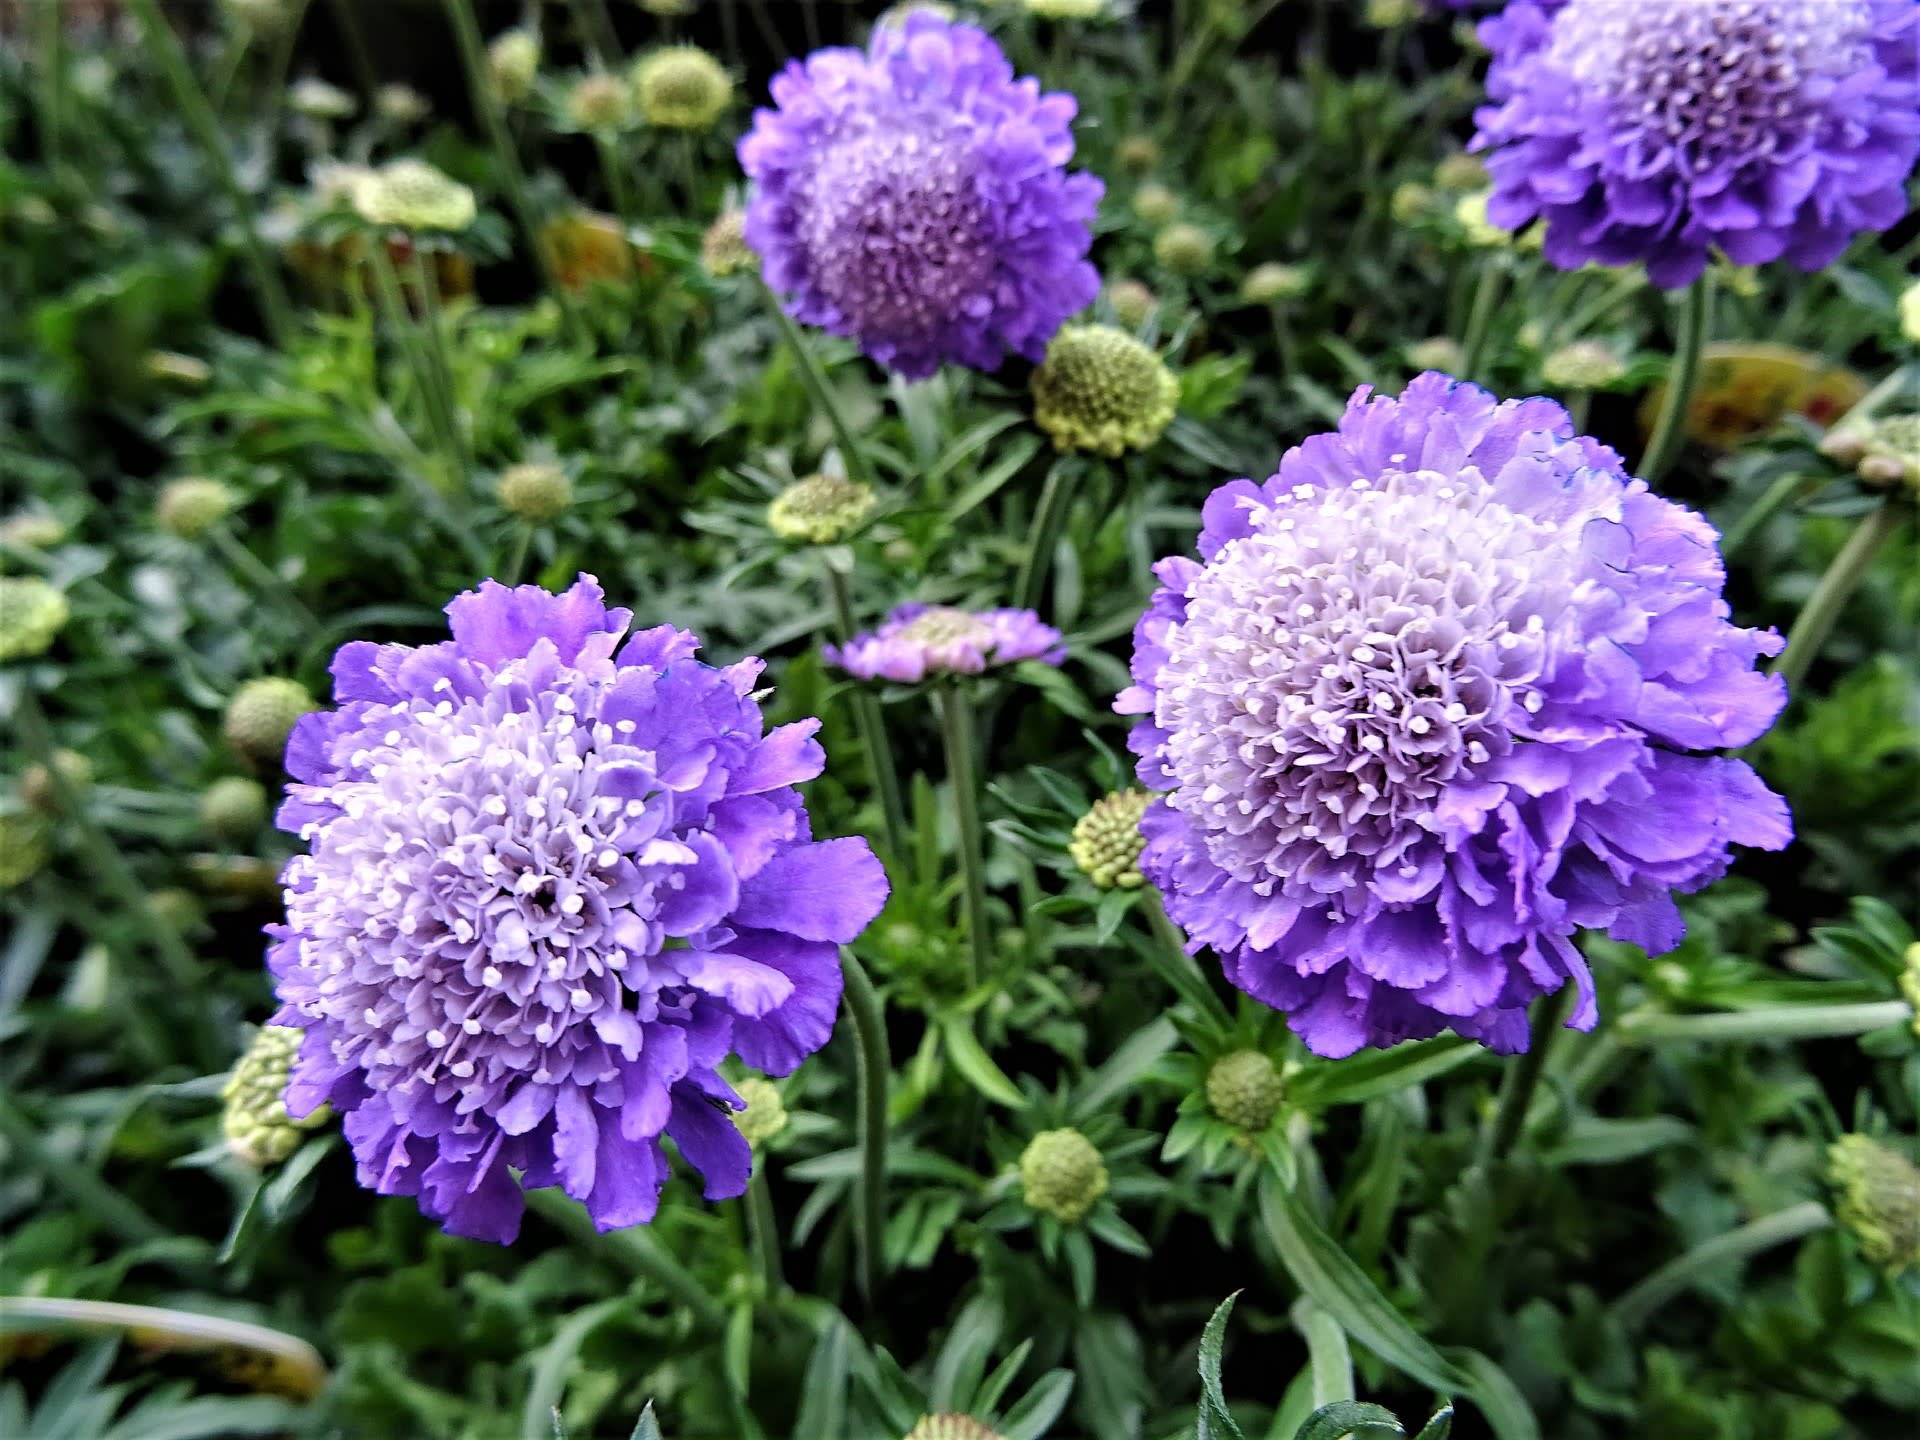 アーナス おはようございます 6 30の誕生花は スカビオサ 花言葉は 不幸な愛 私はすべてを失った 西洋では紫色の花 に悲しい花言葉が多くつけられています 本日もよろしくお願いしますー T Co H0zagm39tc Twitter